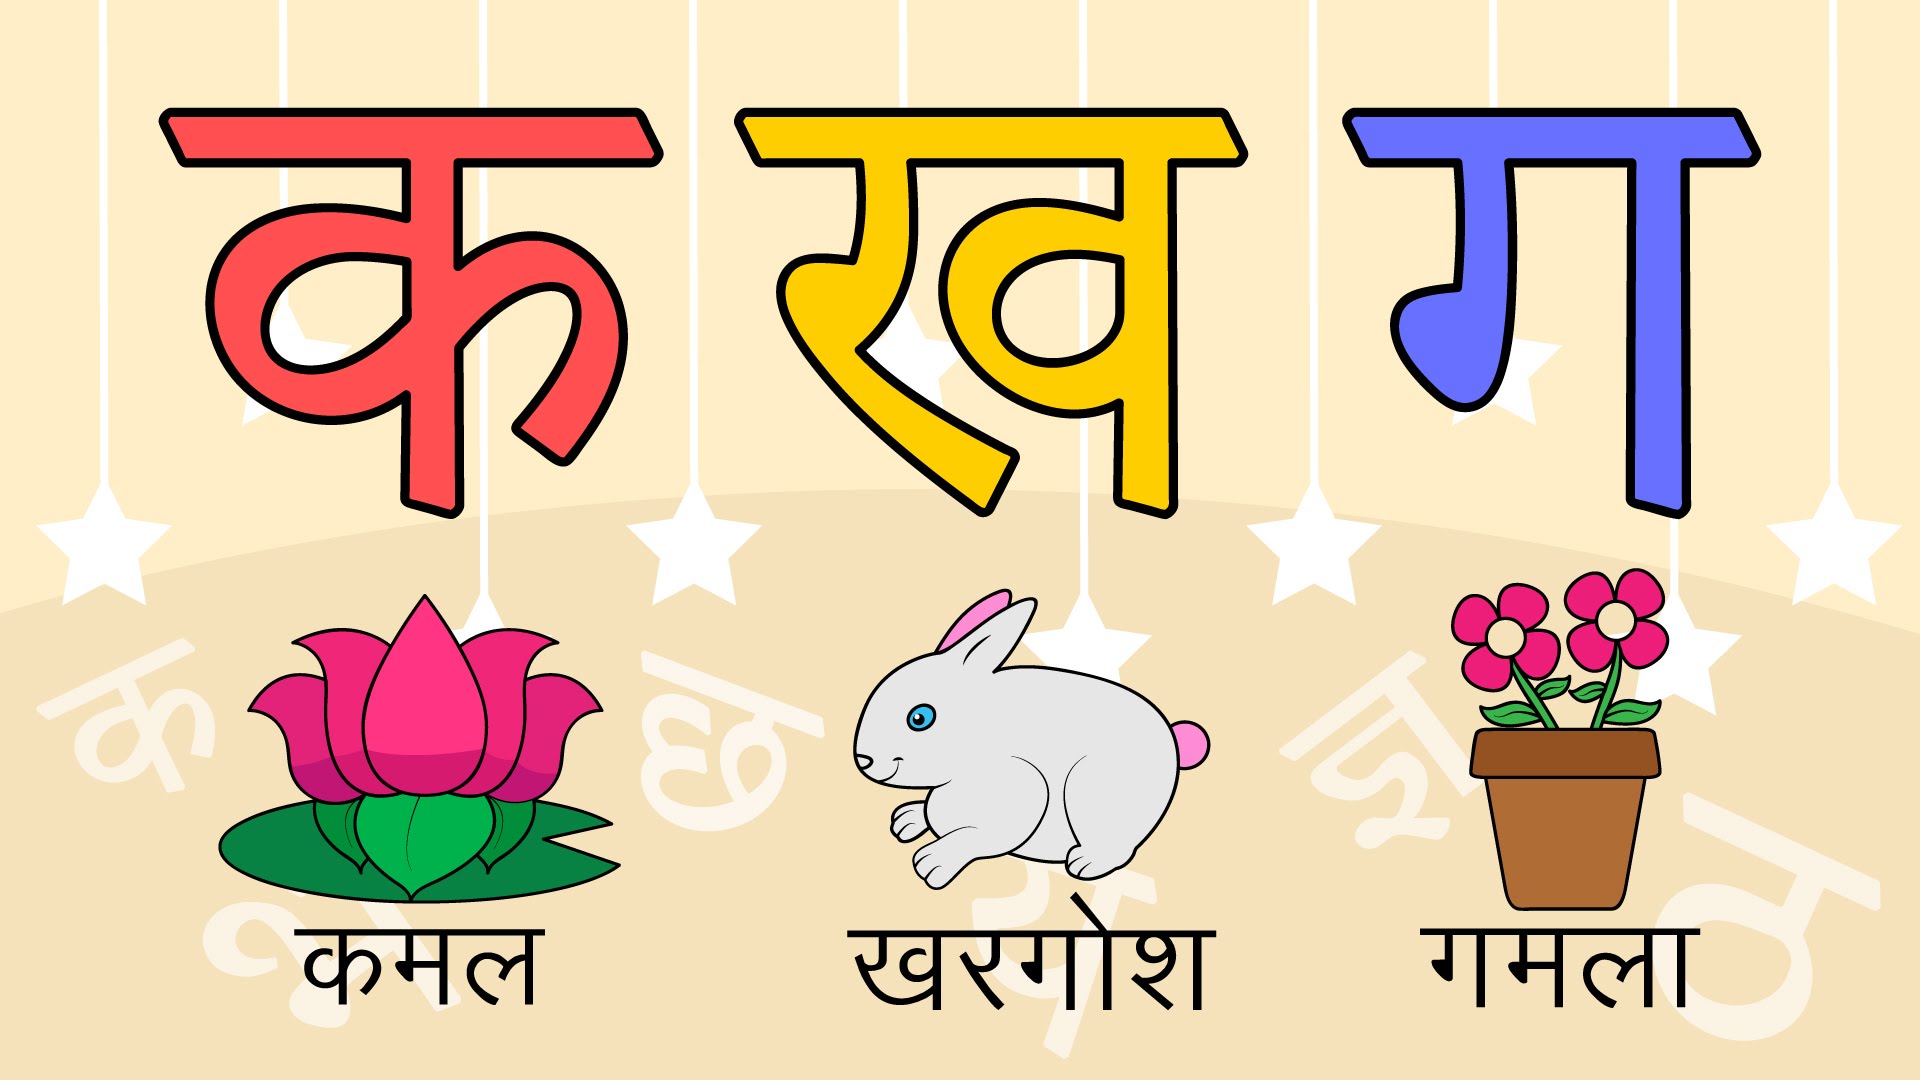 हिंदी के शब्दों का अर्थ